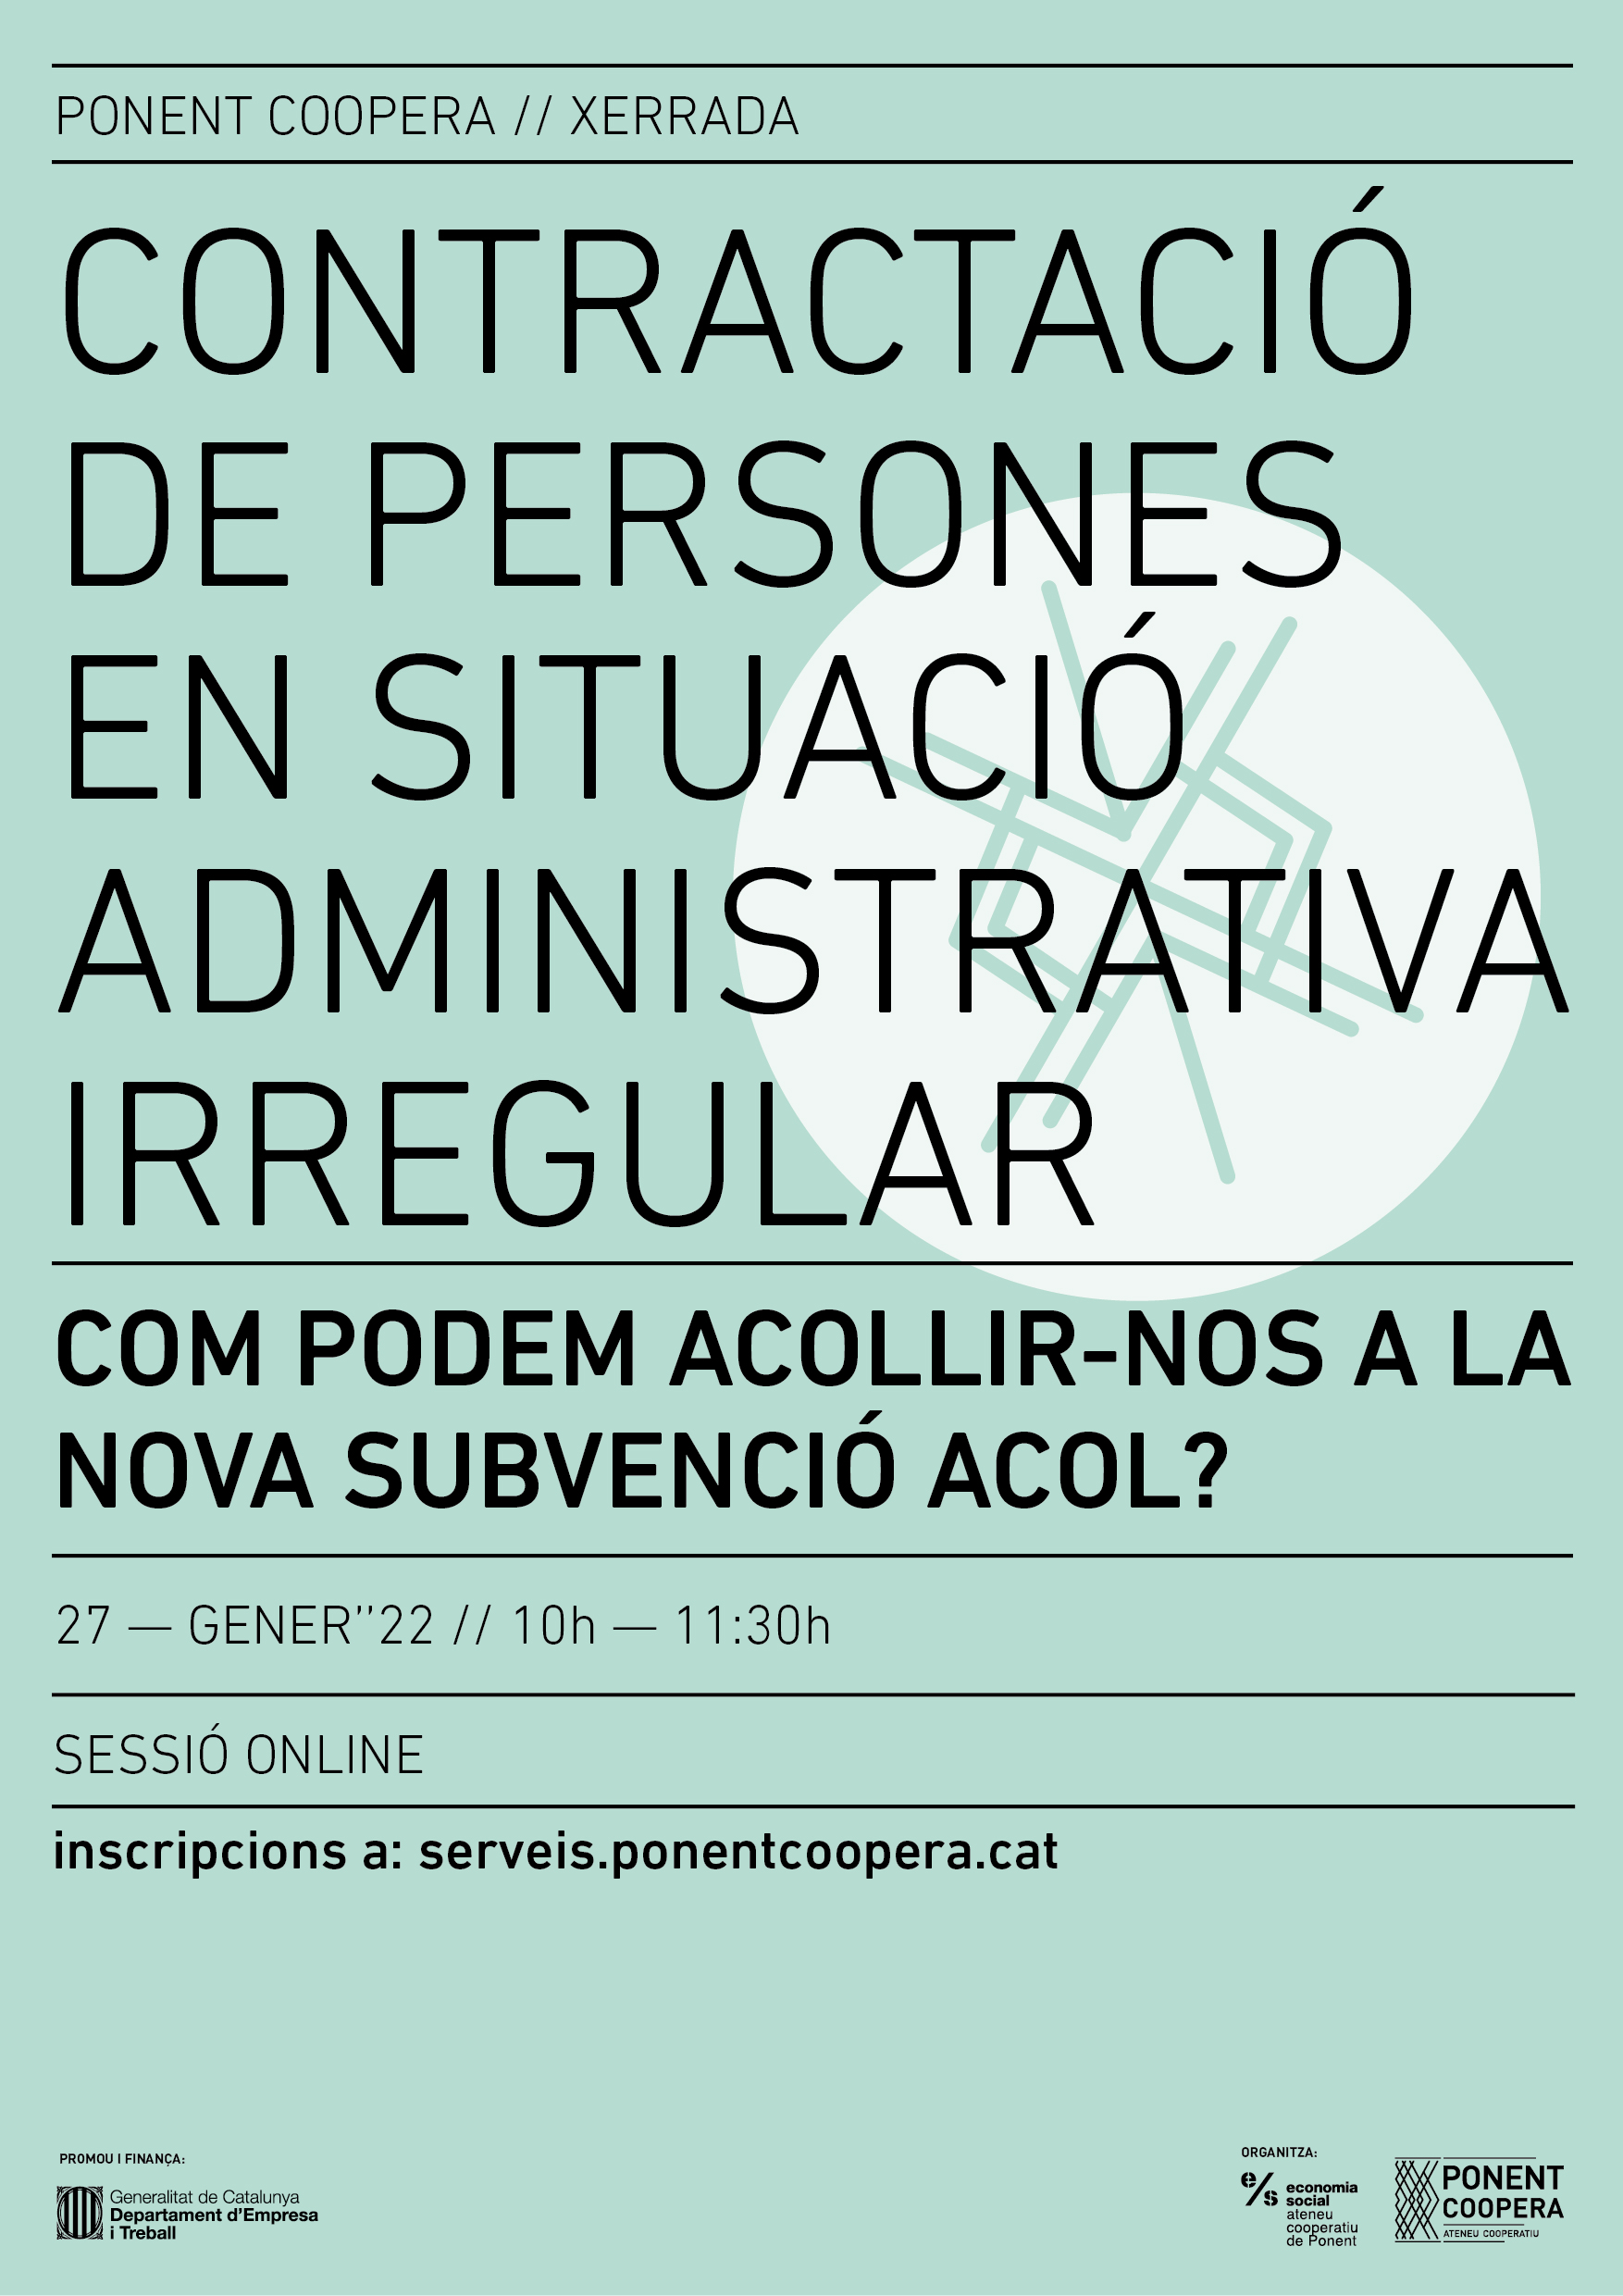 Contractació de persones en situació administrativa irregular: Com podem acollir-nos a la subvenció ACOL?